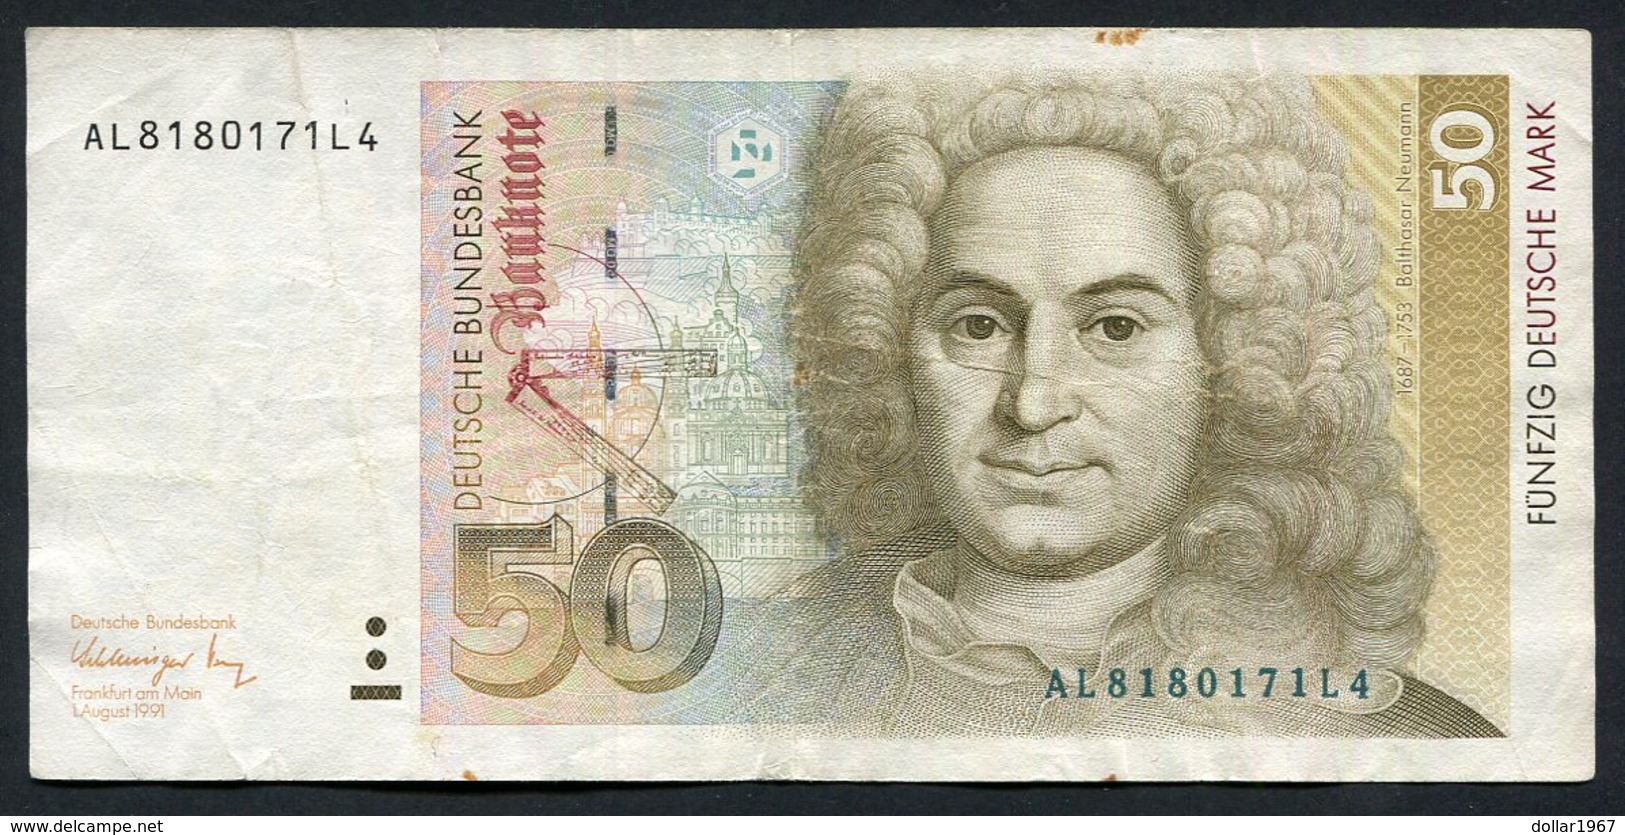 50 Dm / Deutsche Mark / Bundesbanknote 1-8-1991 (AL) - See The 2 Scans For Condition.(Originalscan ) - 50 Deutsche Mark